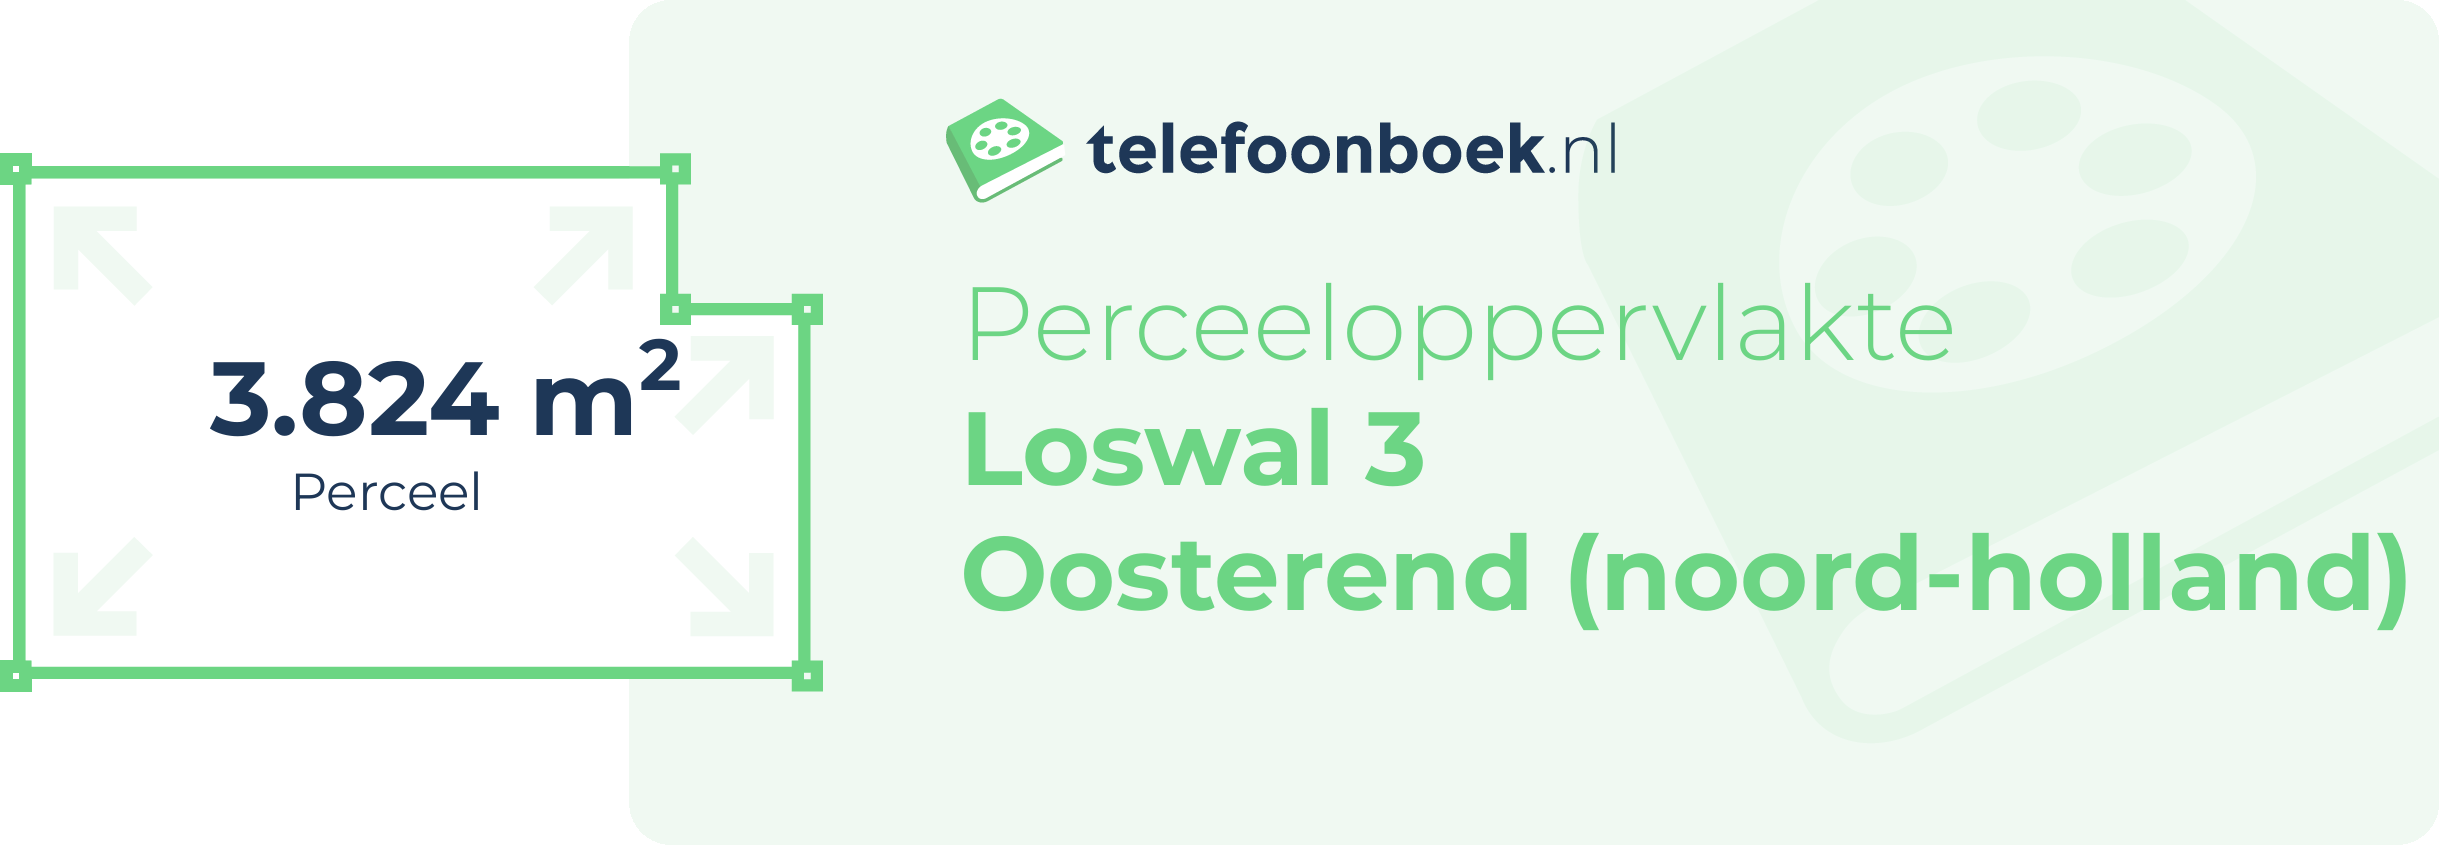 Perceeloppervlakte Loswal 3 Oosterend (Noord-Holland)